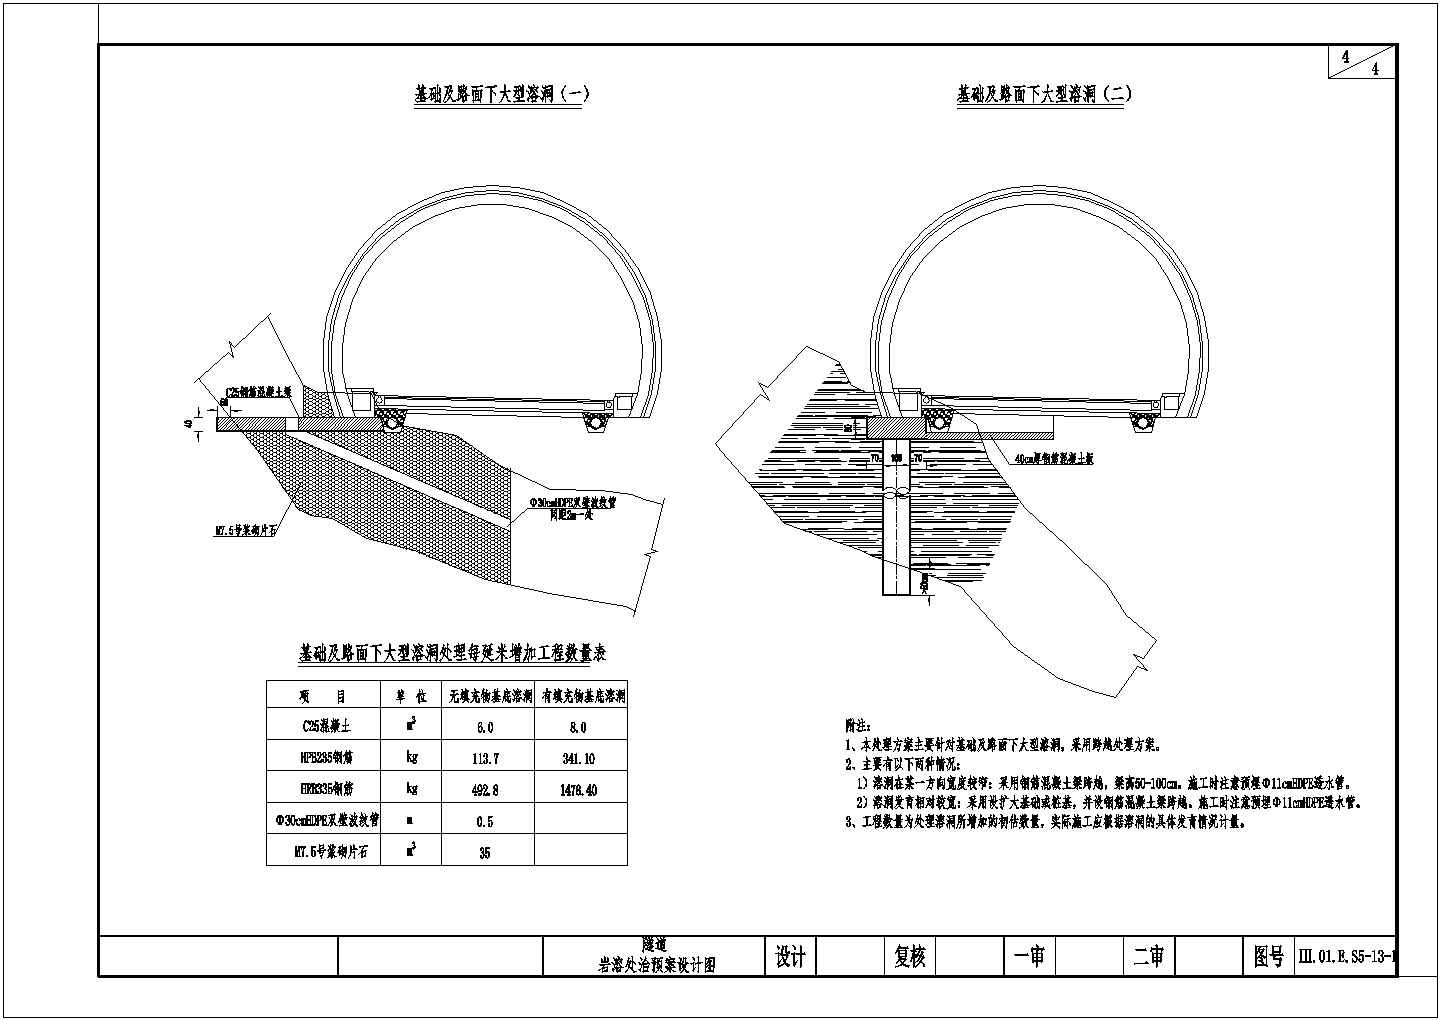 隧道工程岩溶处治预案设计图